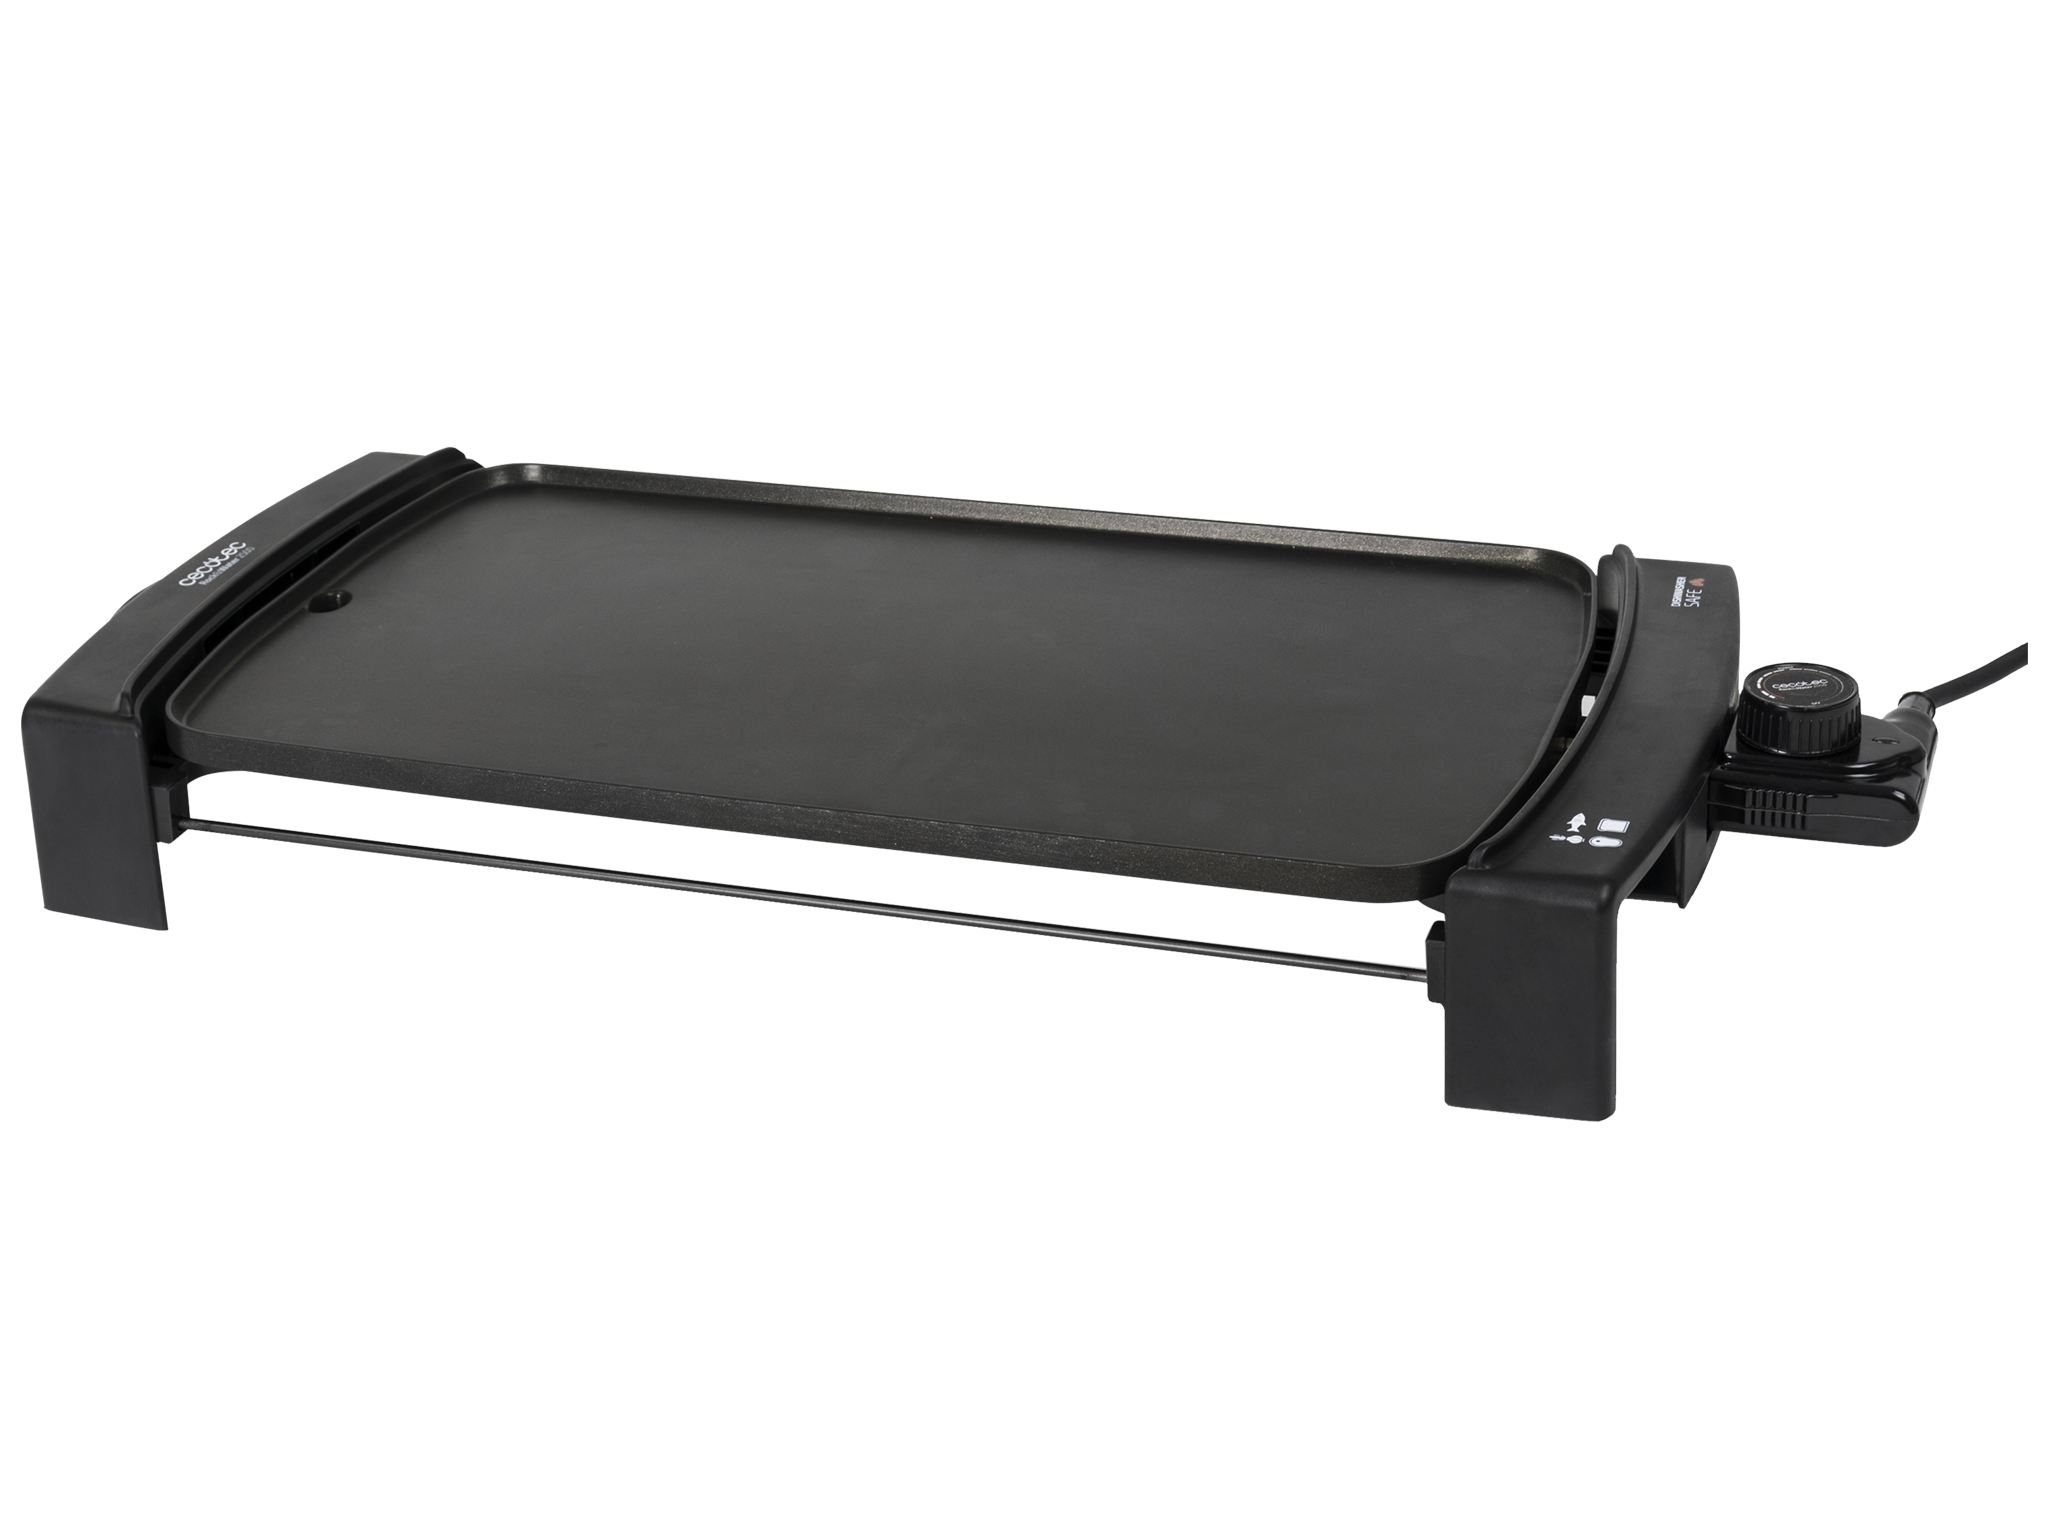 Black&Water 2500 - Griddle Grillplatte, Elektrogrill, Antihaftbeschichtung, Tropfschale, einstellbare Temperatur, spülmaschinenfest